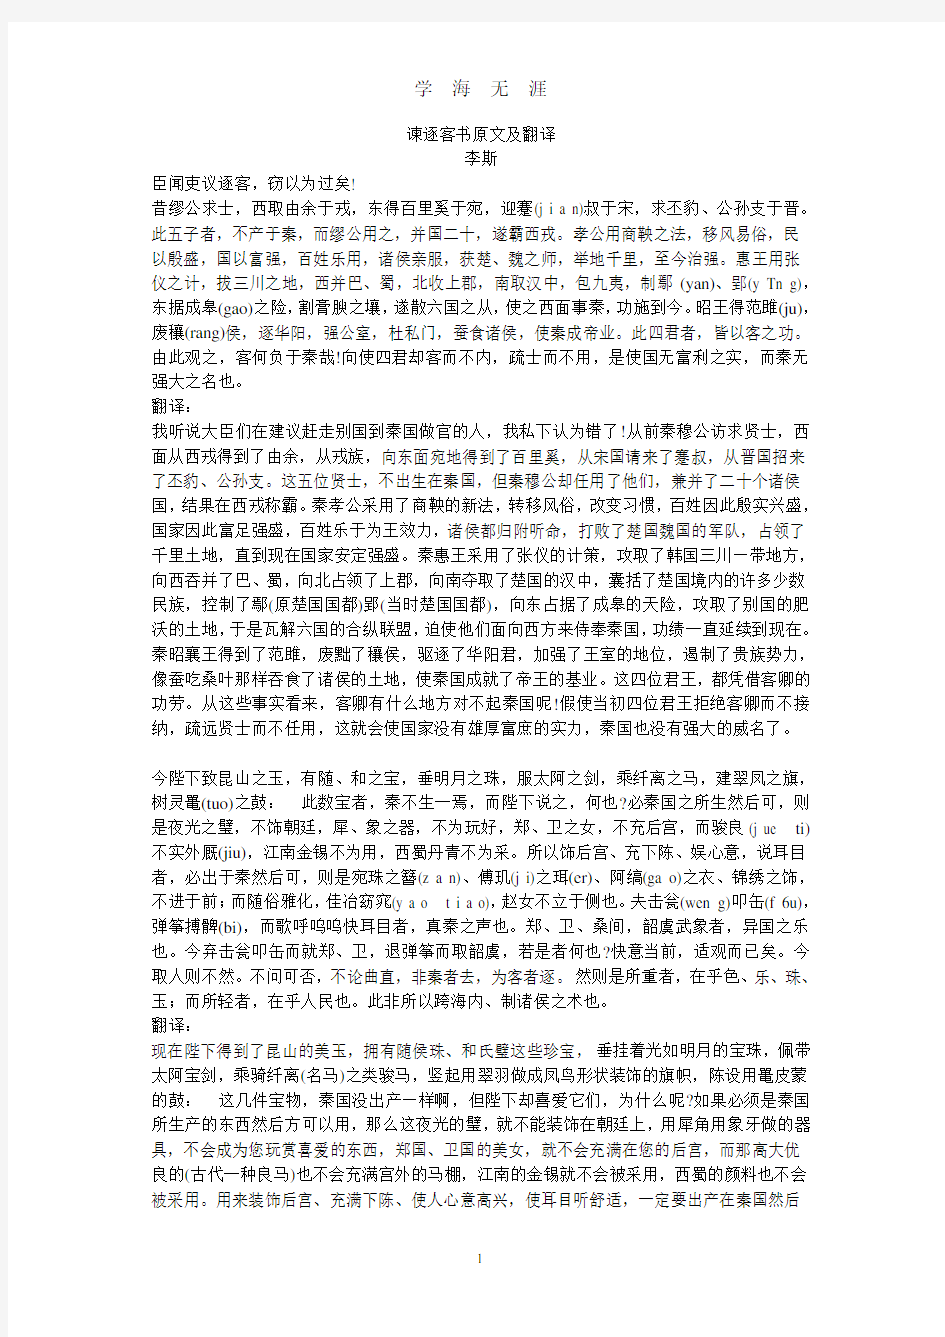 谏逐客书原文及翻译(2020年7月整理).pdf